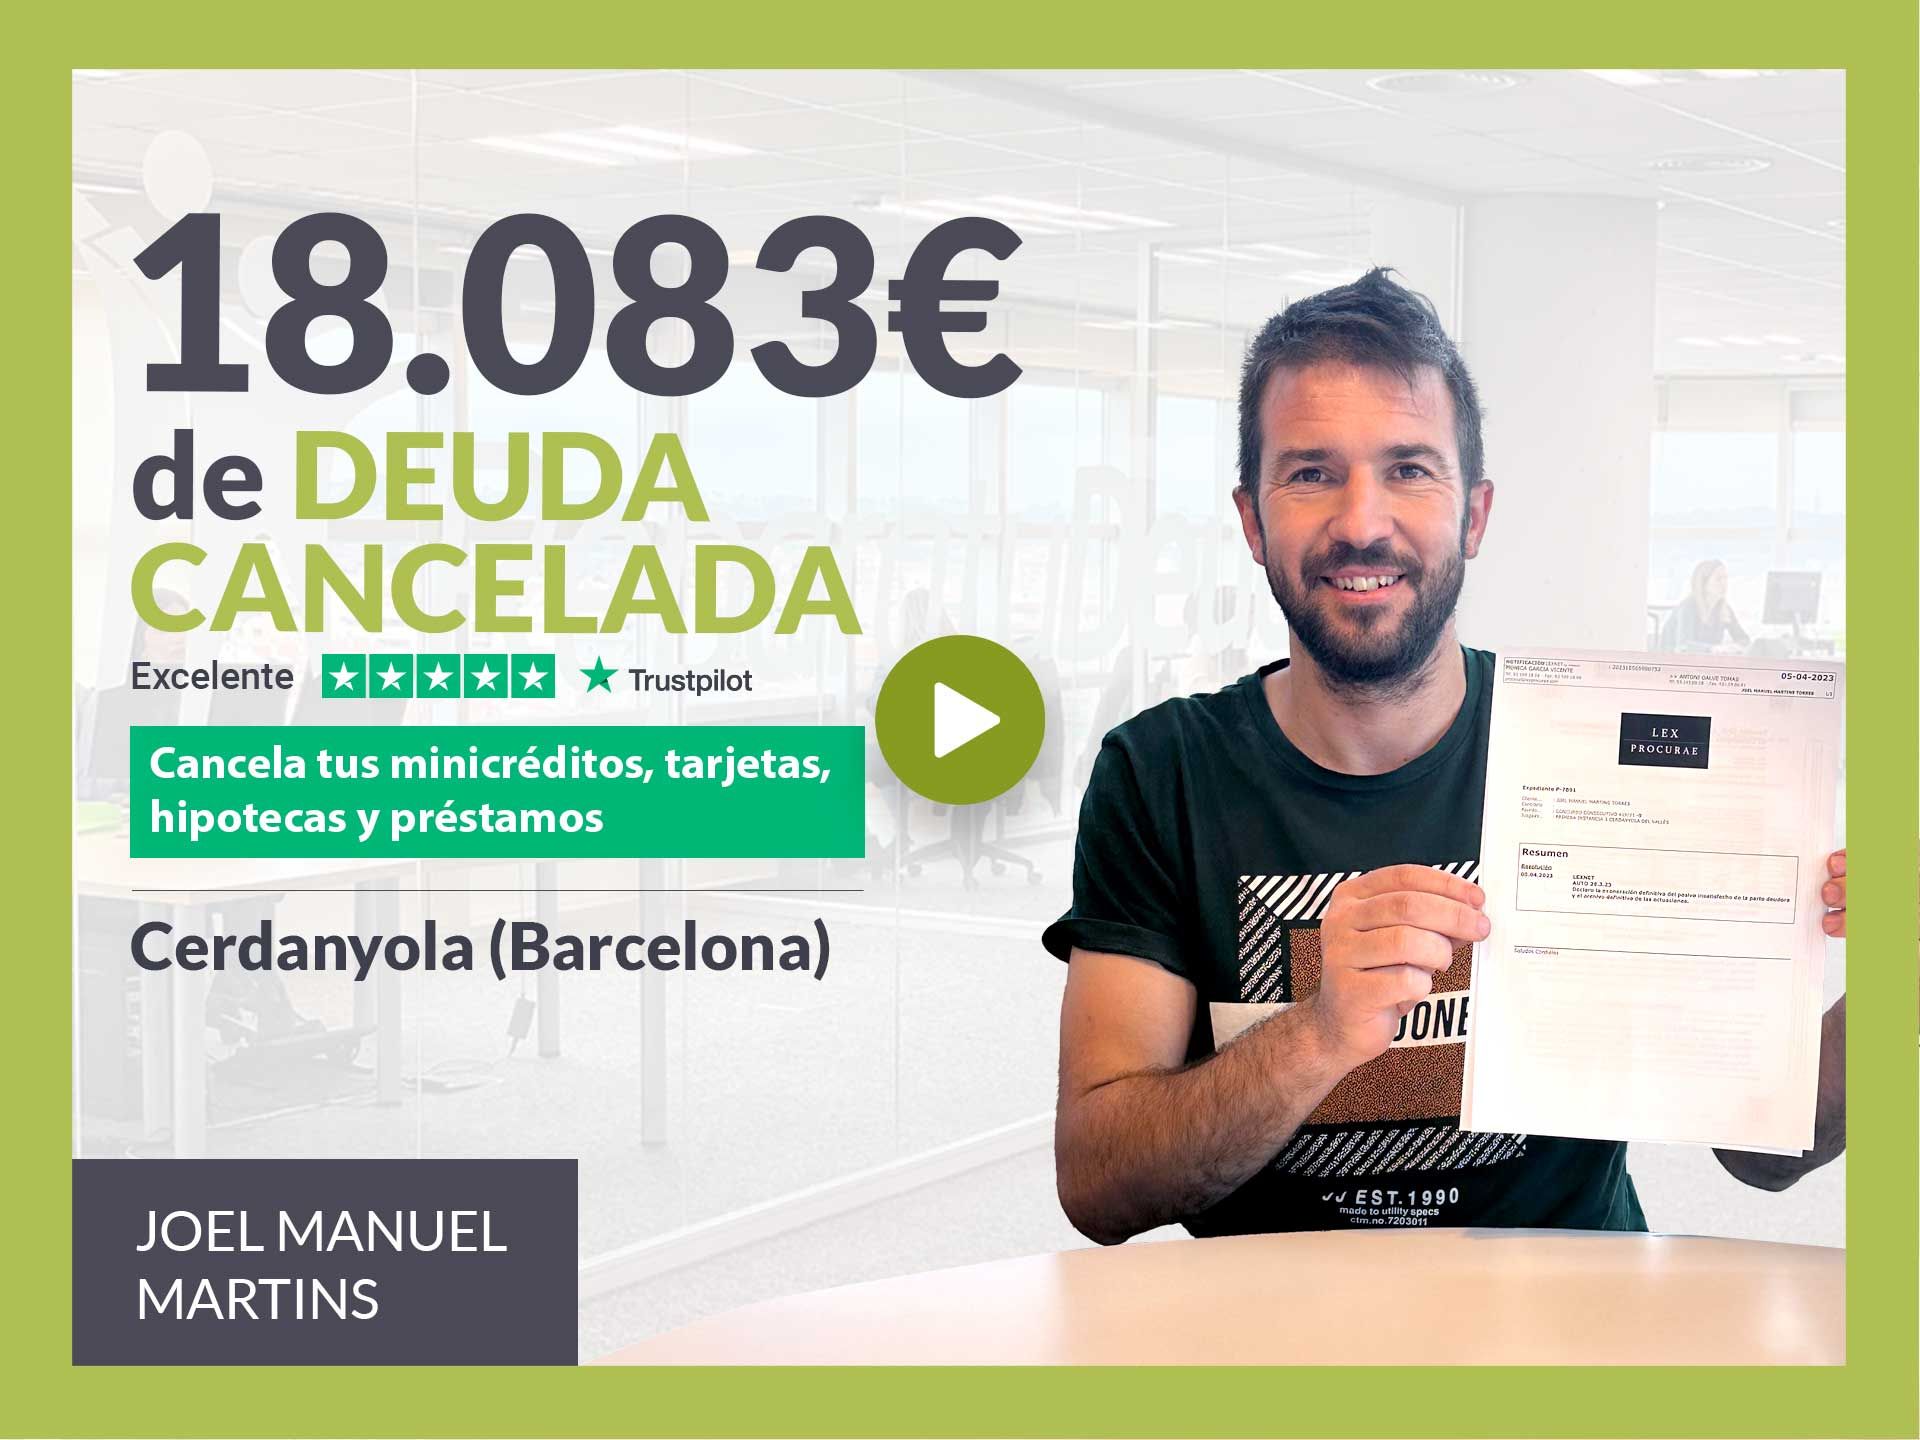 Repara tu Deuda Abogados cancela 18.083? en Cerdanyola (Barcelona) con la Ley de Segunda Oportunidad